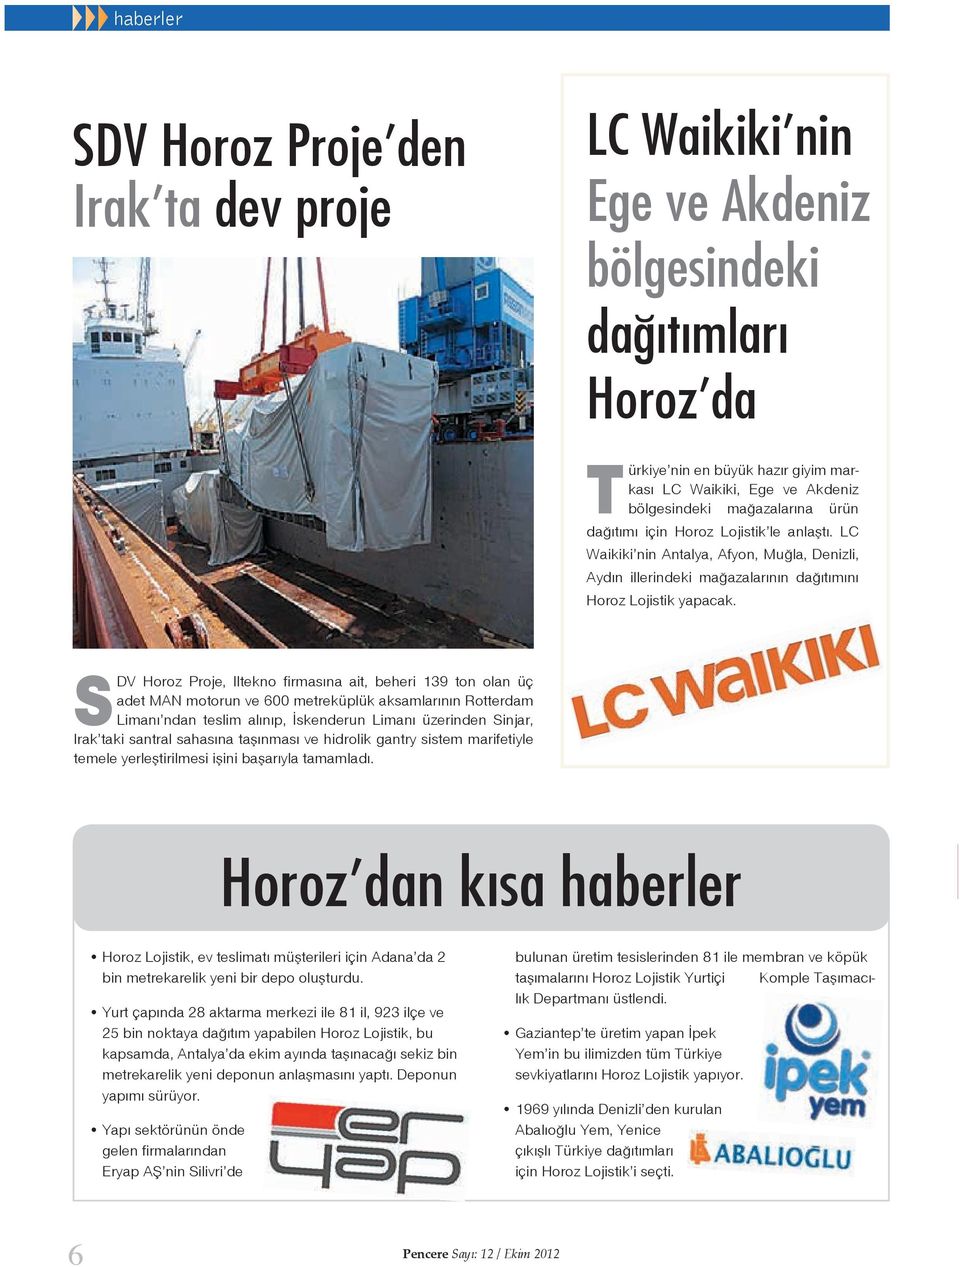 SDV Horoz Proje, Iltekno firmasına ait, beheri 139 ton olan üç adet MAN motorun ve 600 metreküplük aksamlarının Rotterdam Limanı ndan teslim alınıp, İskenderun Limanı üzerinden Sinjar, Irak taki